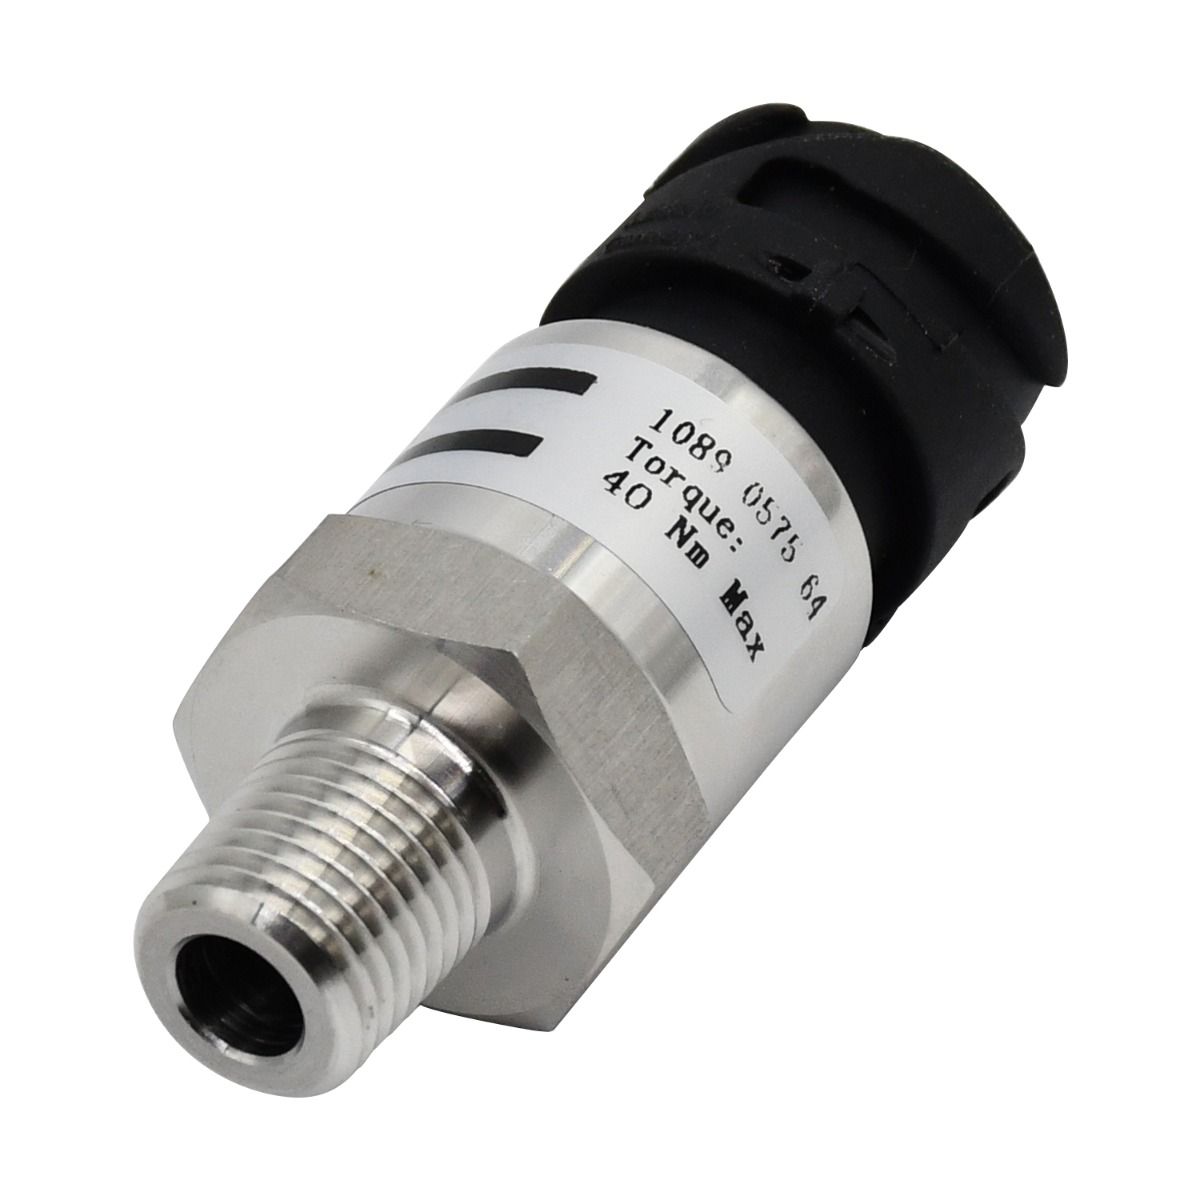 Pressure Switch Sensor 1089-0575-64 for Atlas Copco